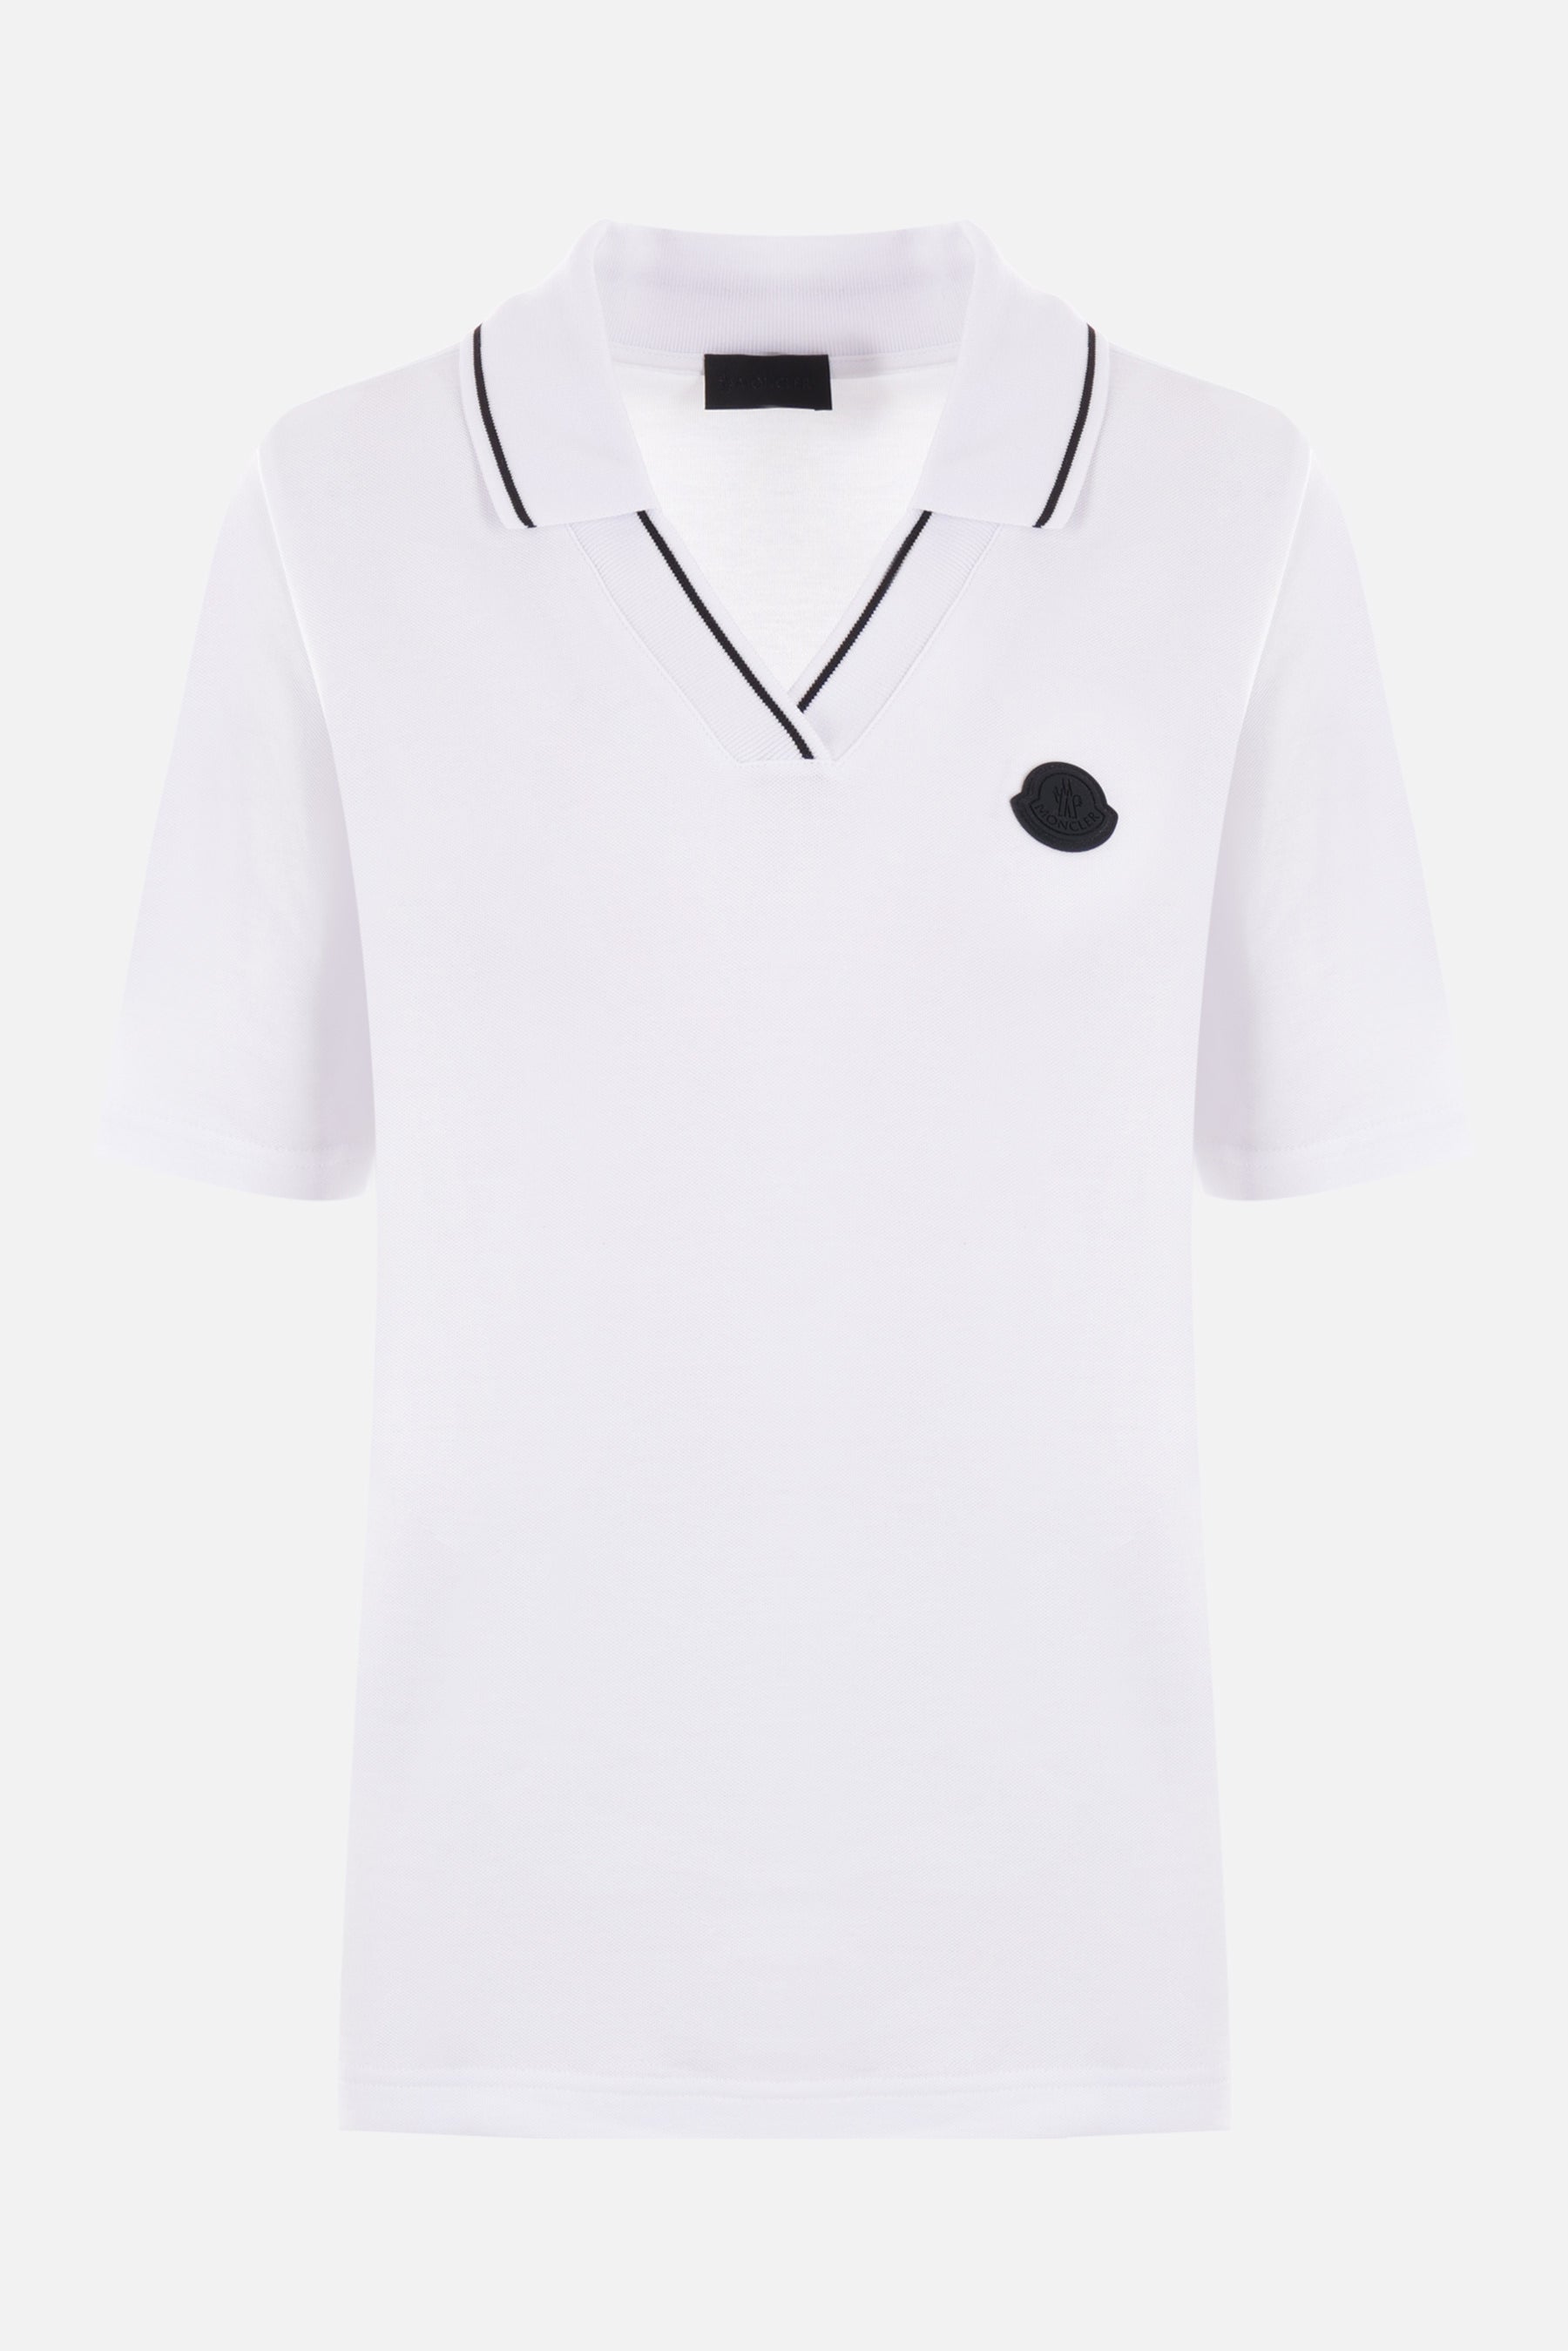 piquet polo shirt